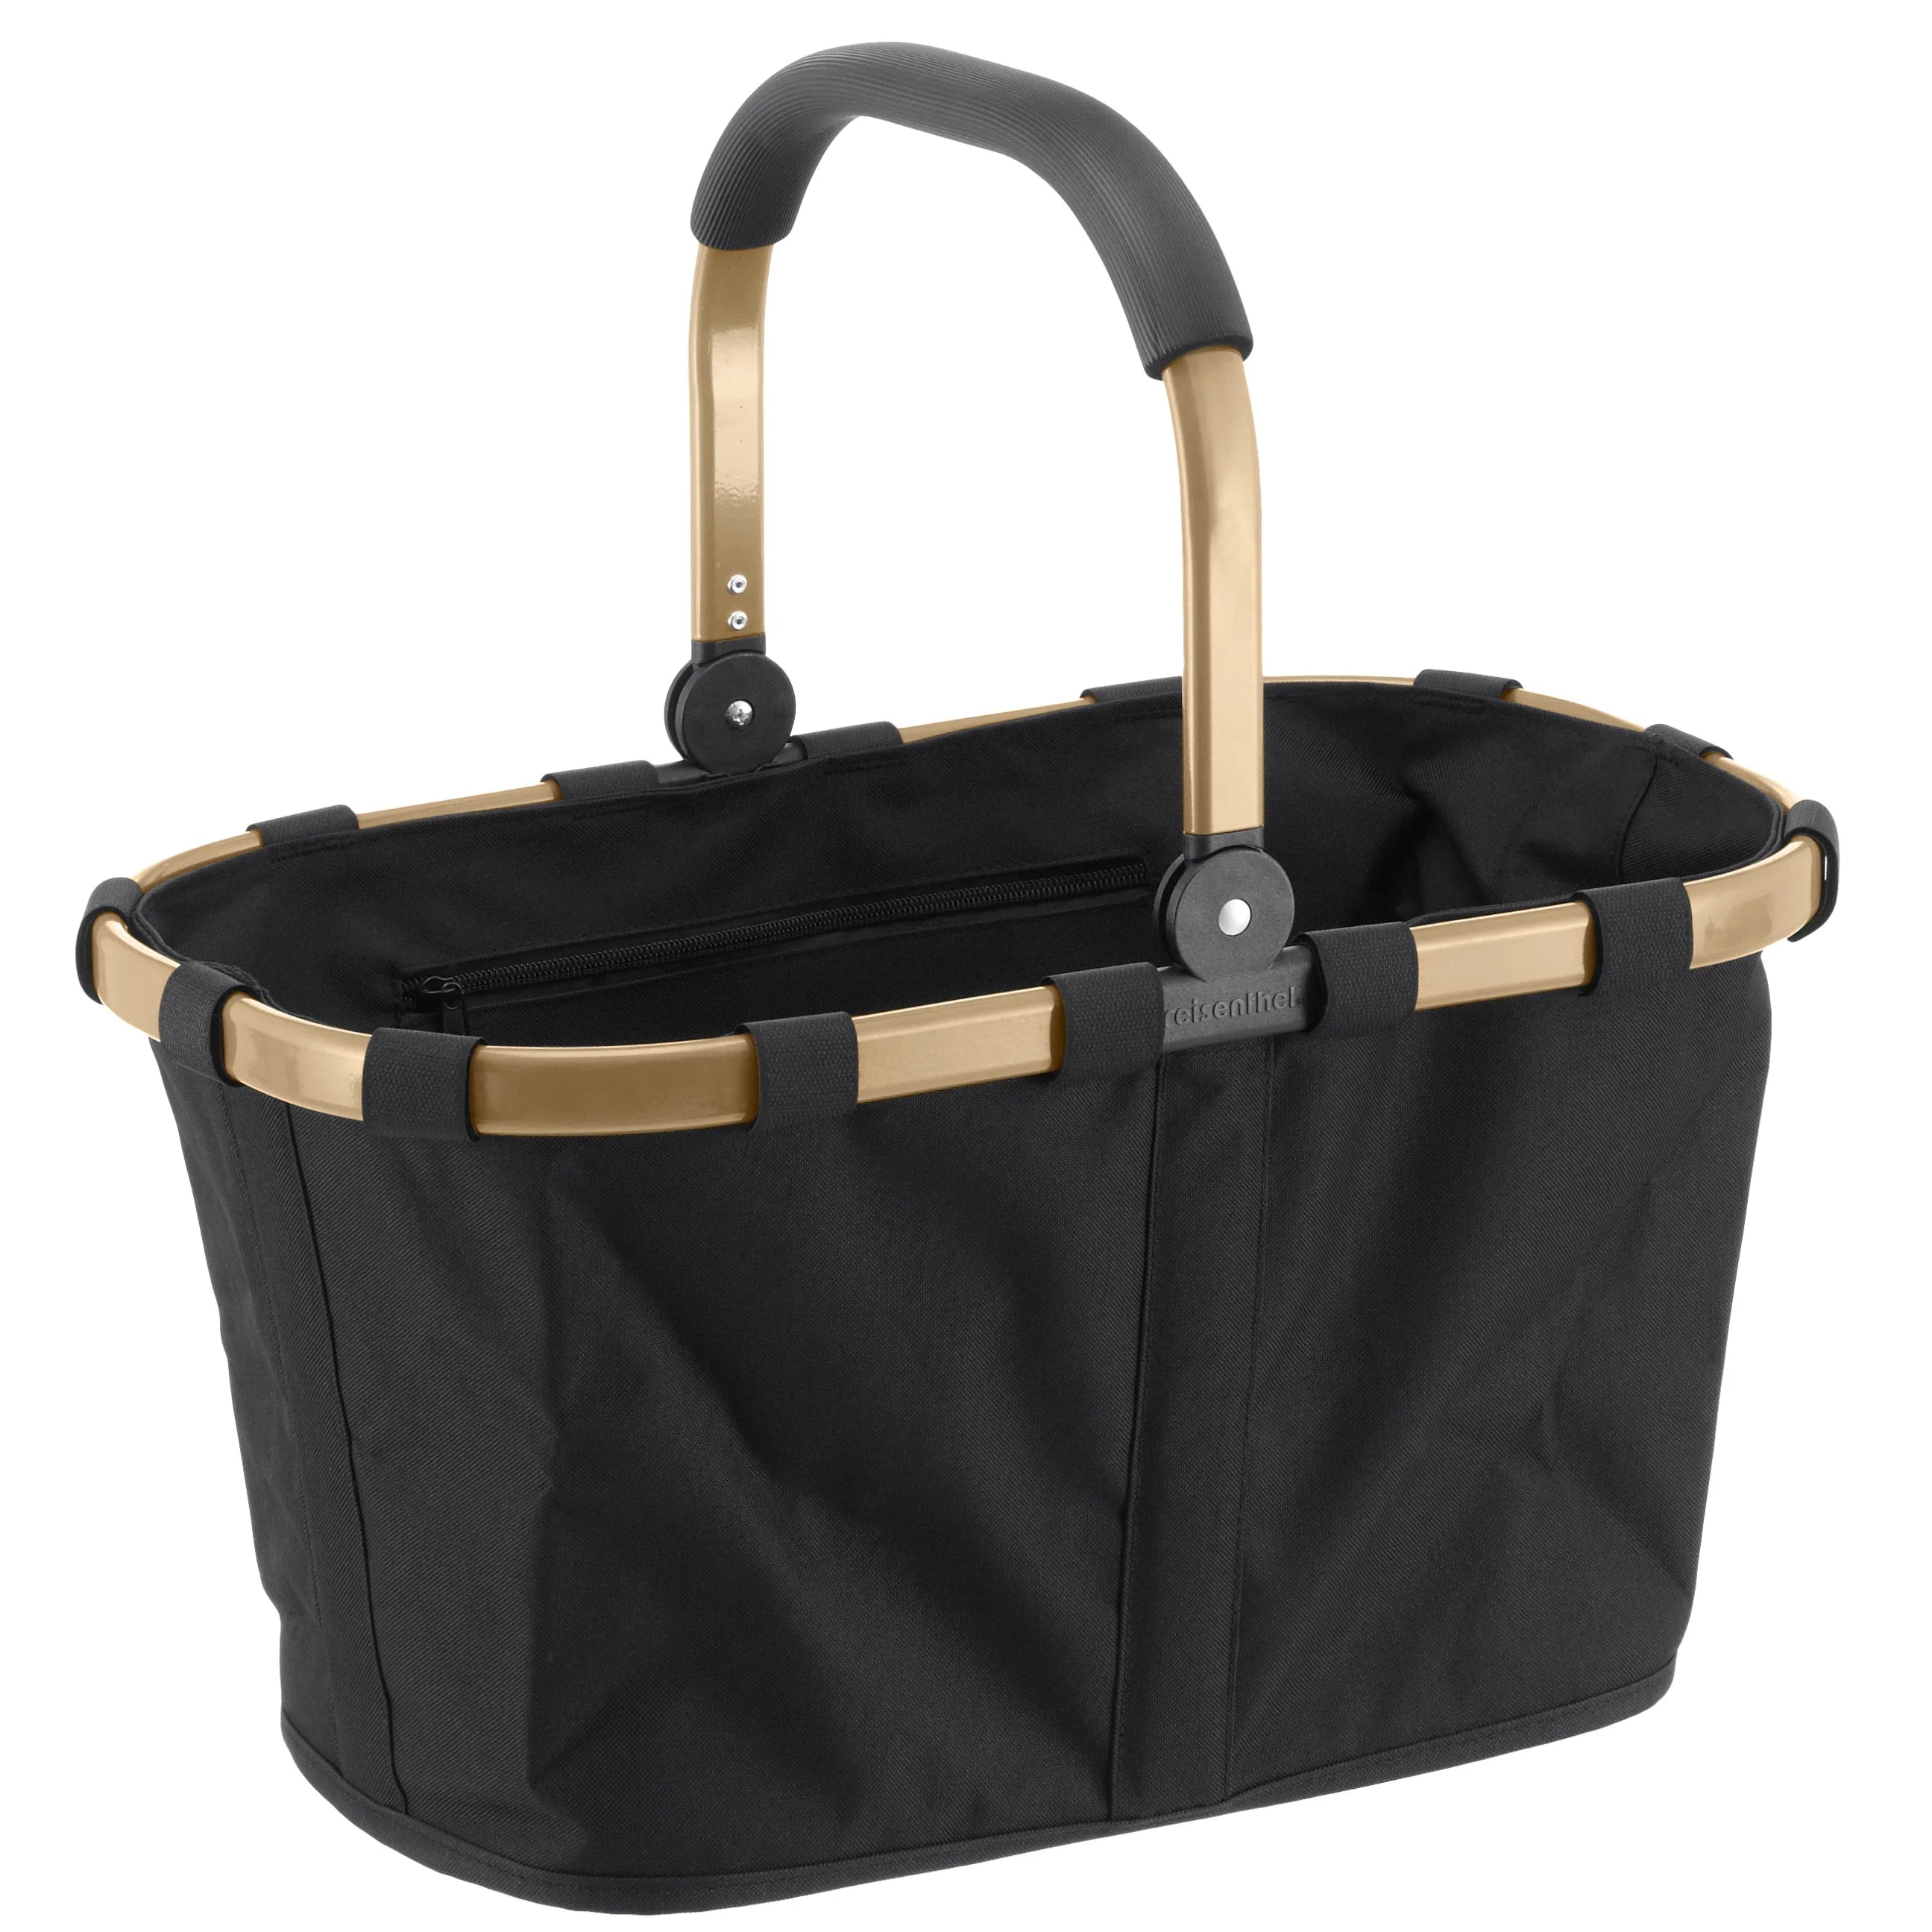 Reisenthel Shopping Carrybag Frame shopping basket 48 cm - gold/black